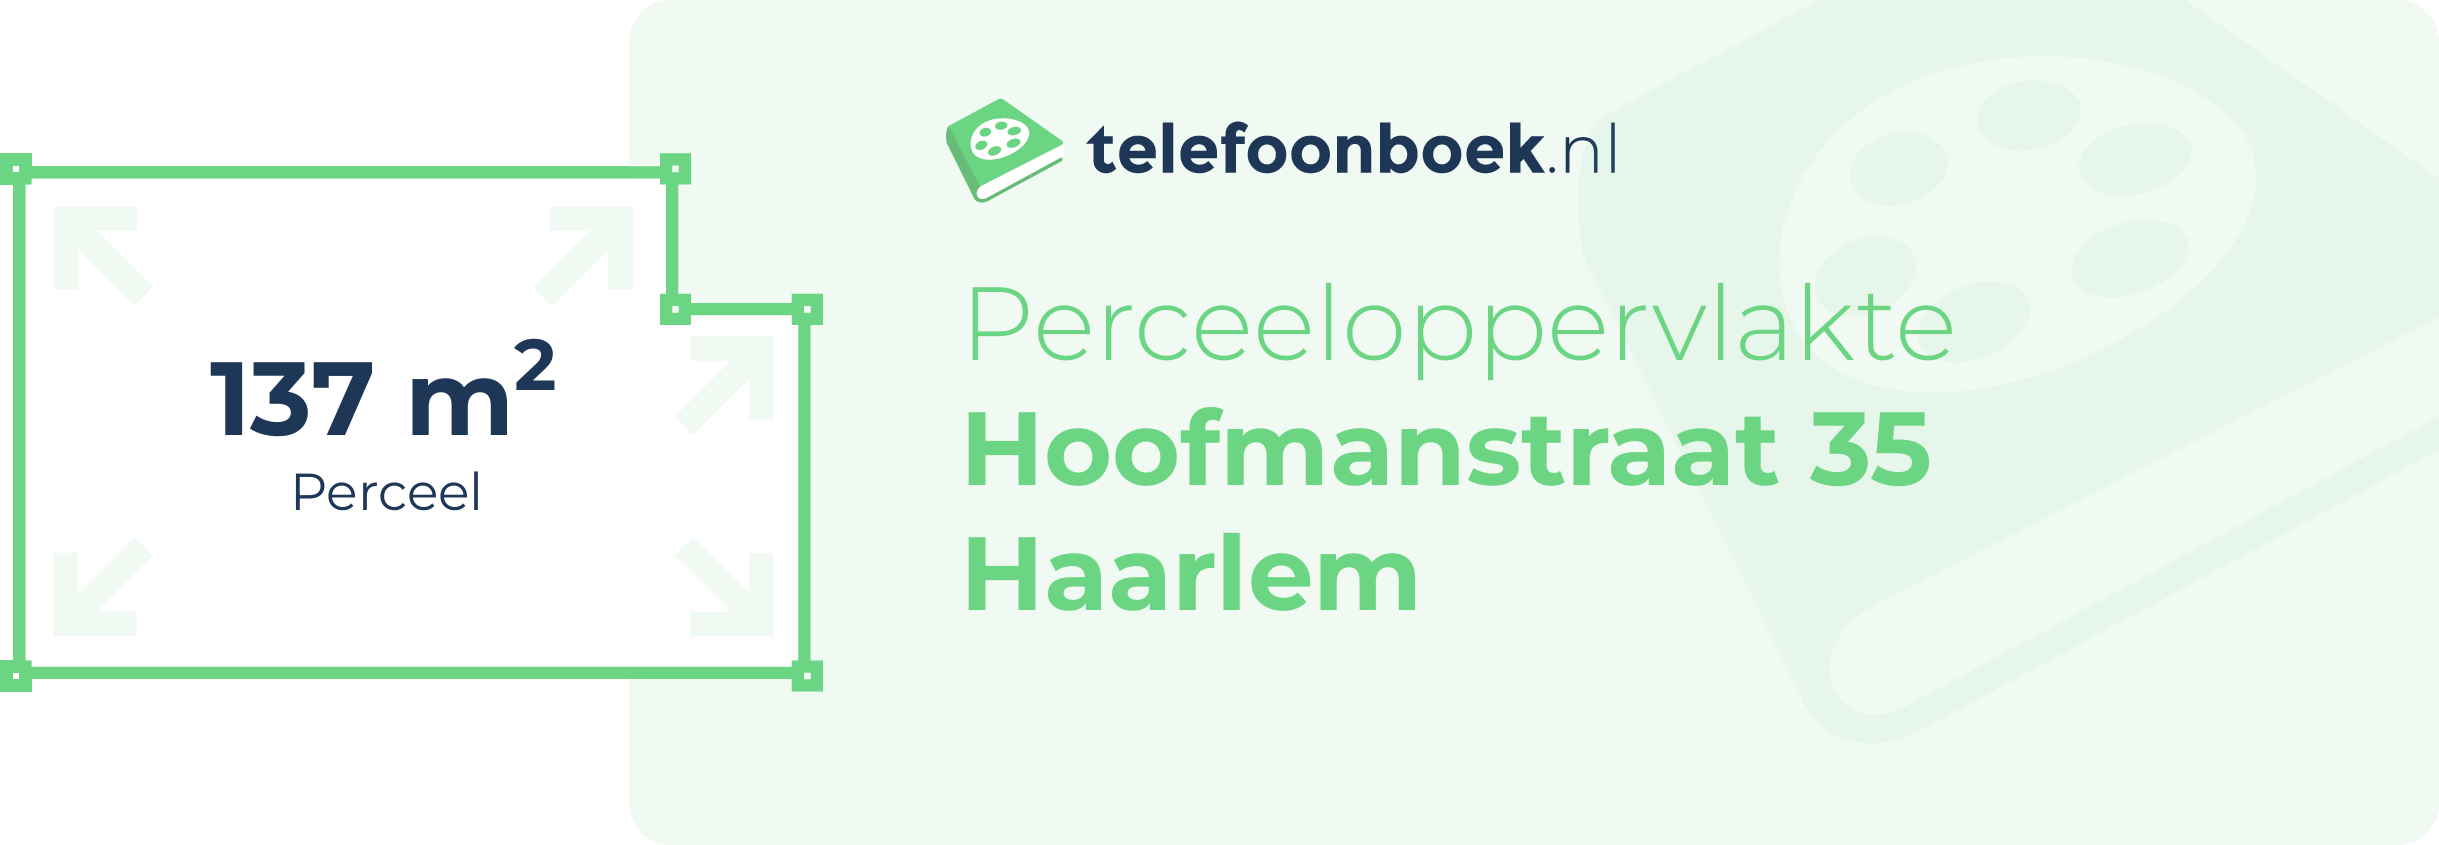 Perceeloppervlakte Hoofmanstraat 35 Haarlem